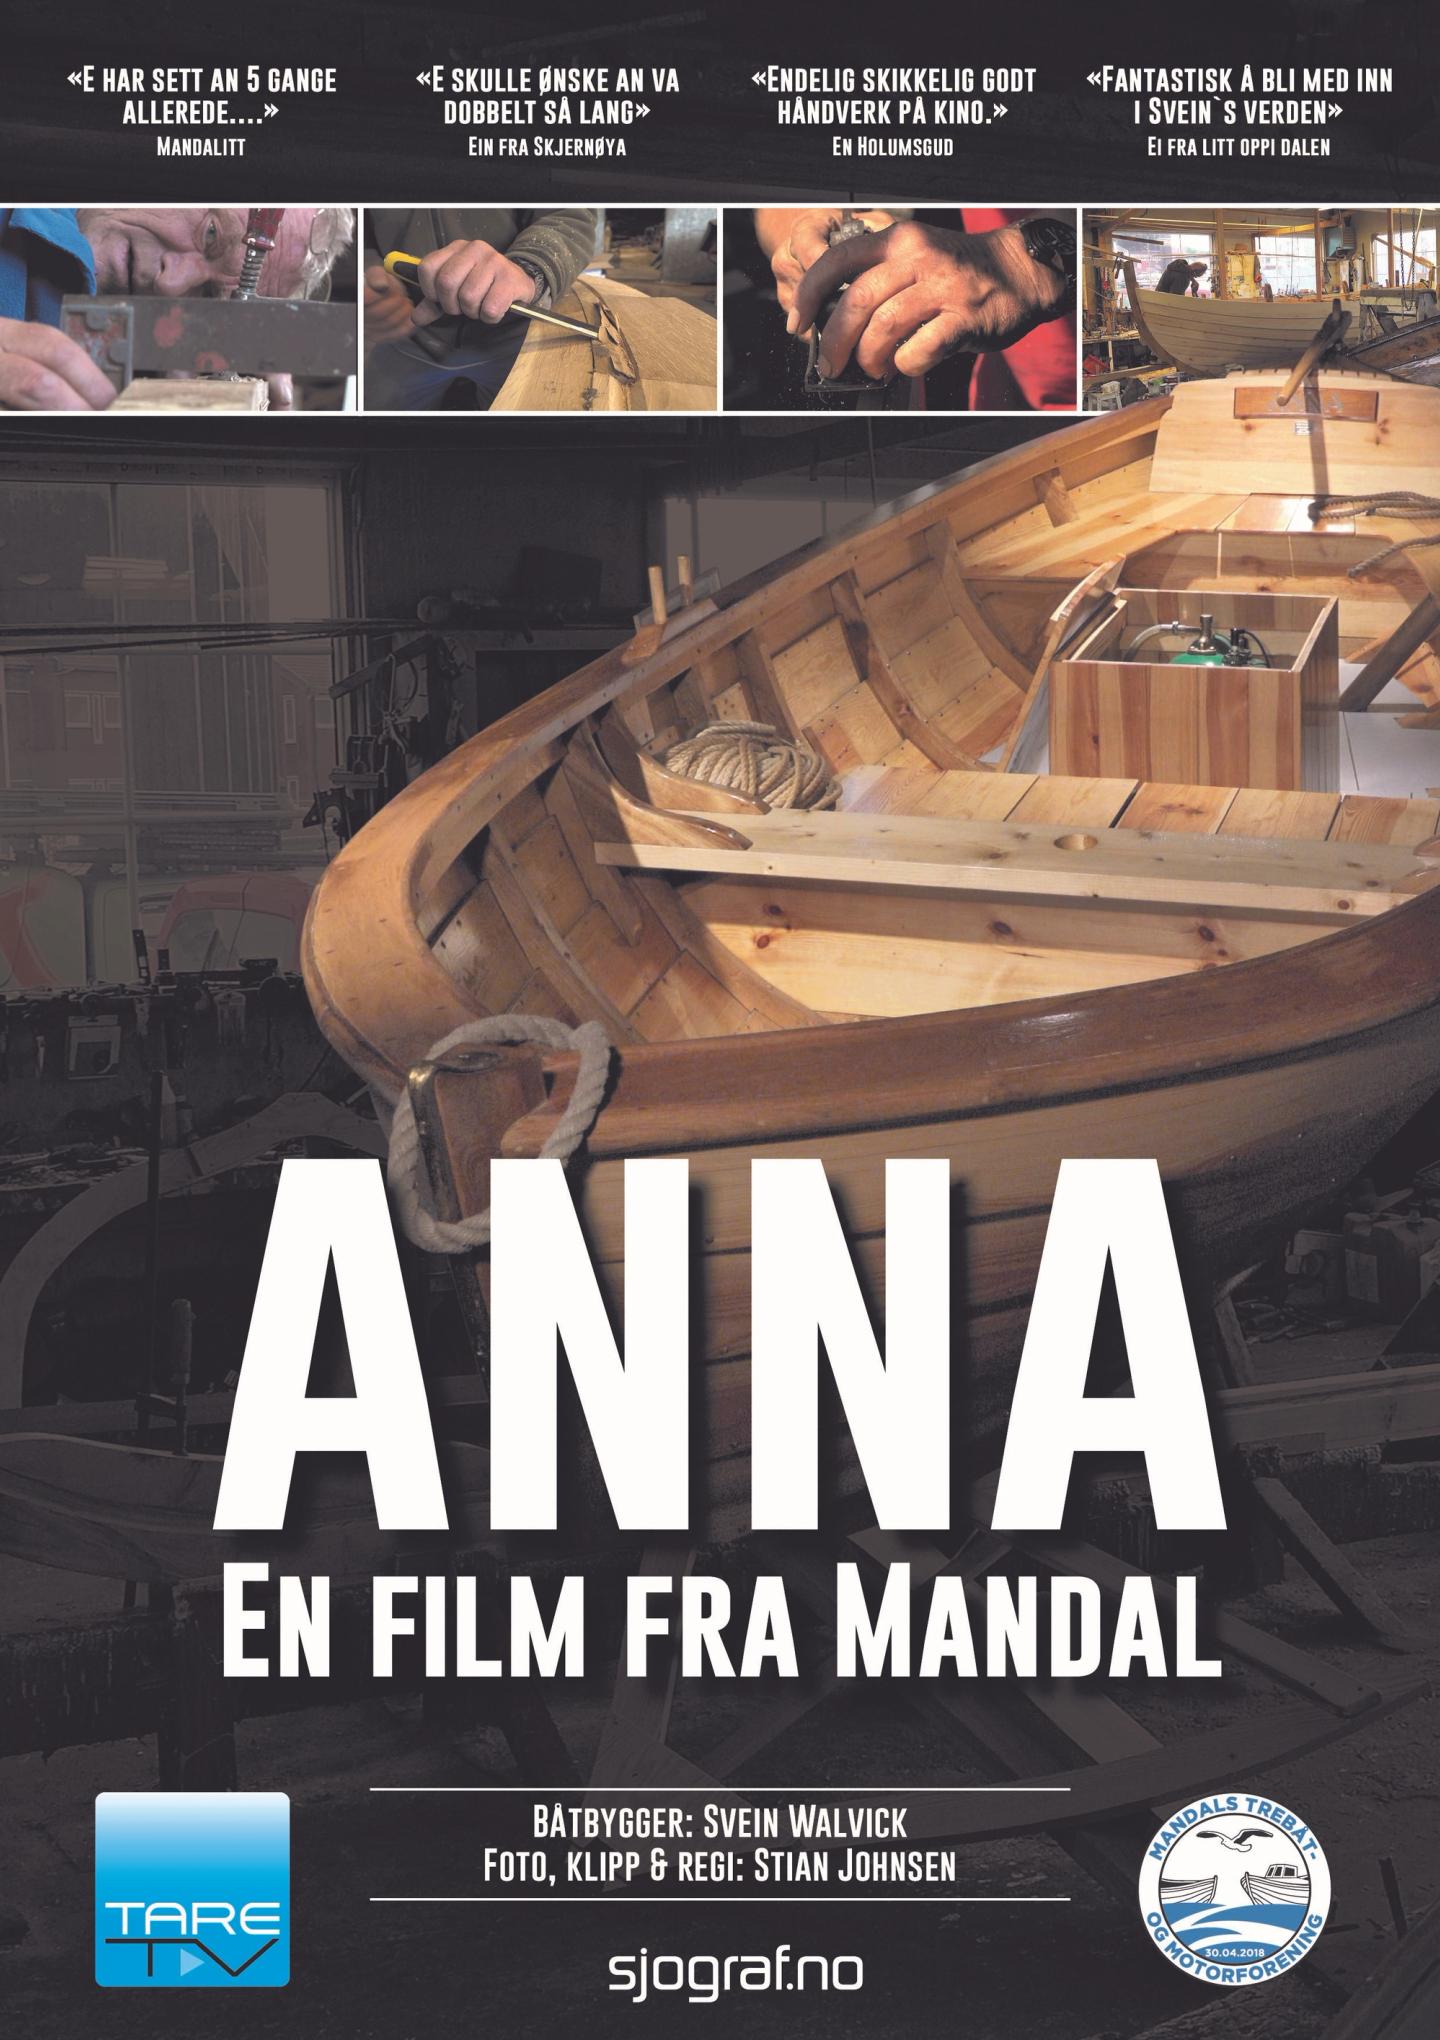 Plakat for 'ANNA'